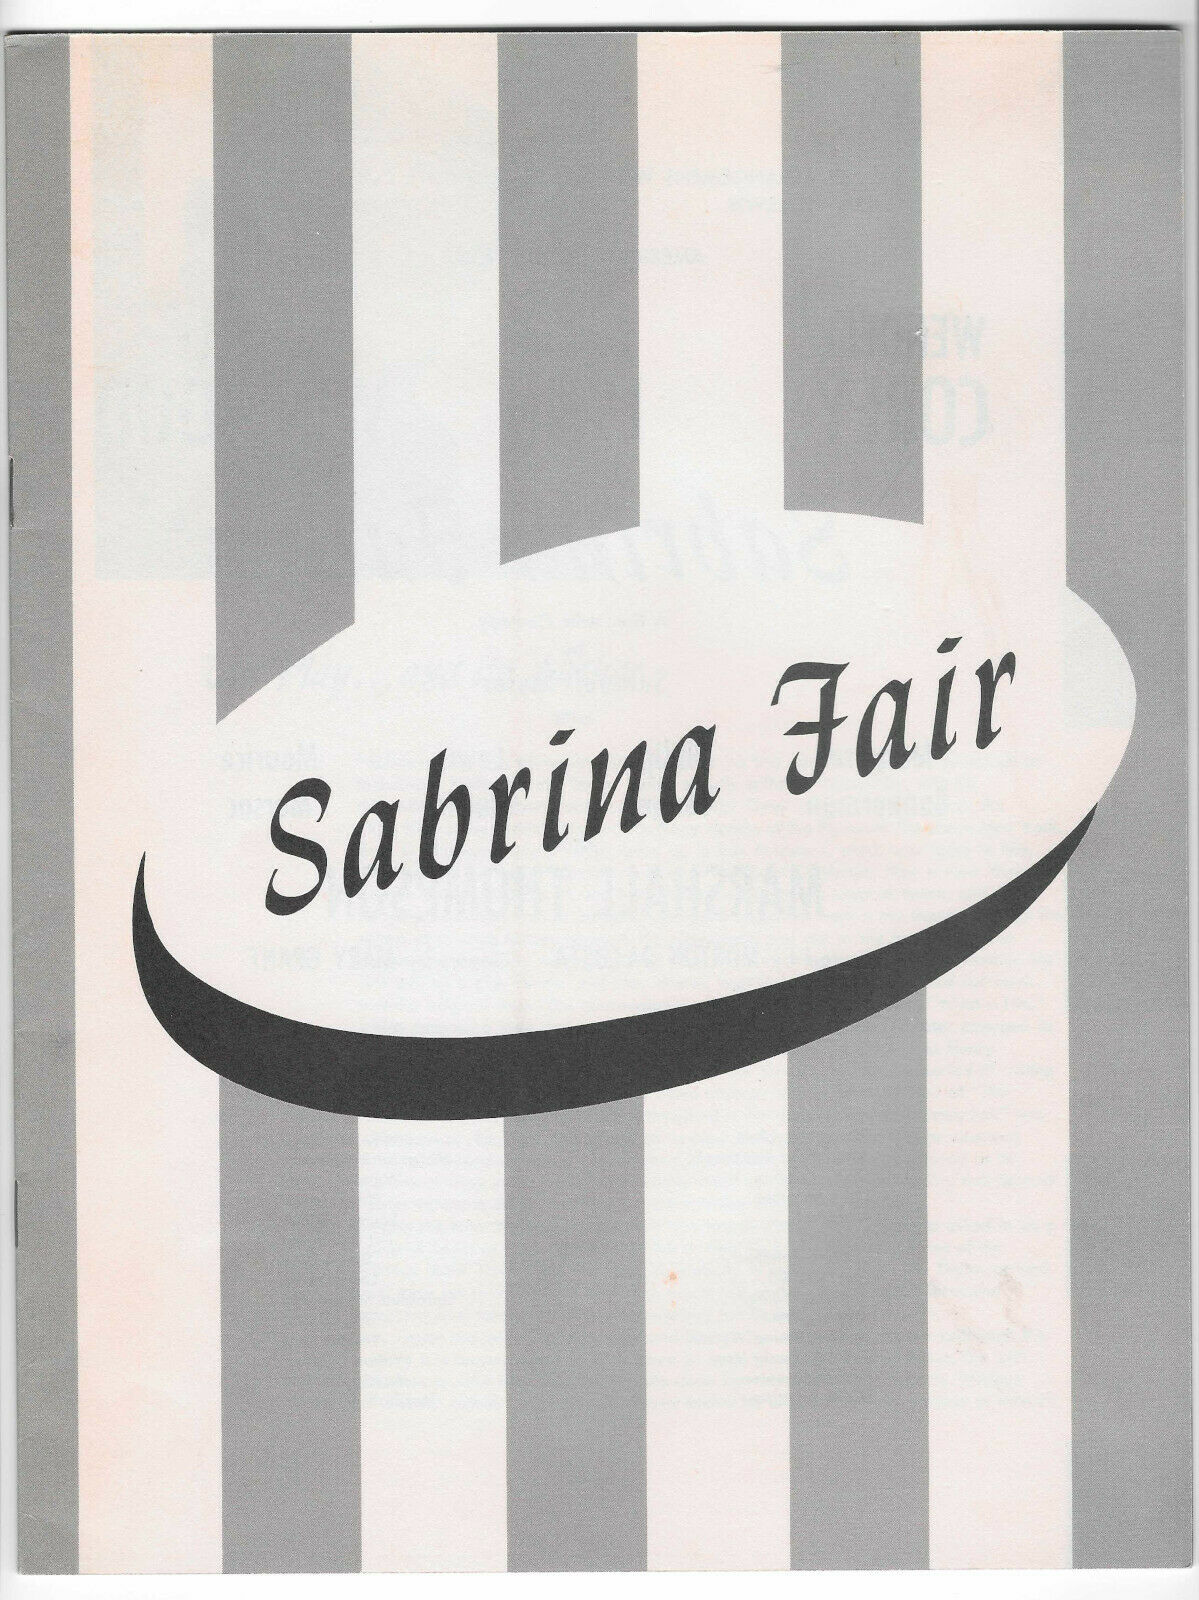 Sabrina Fair Playbill & Flyer Geary Theater San Francisco 1954